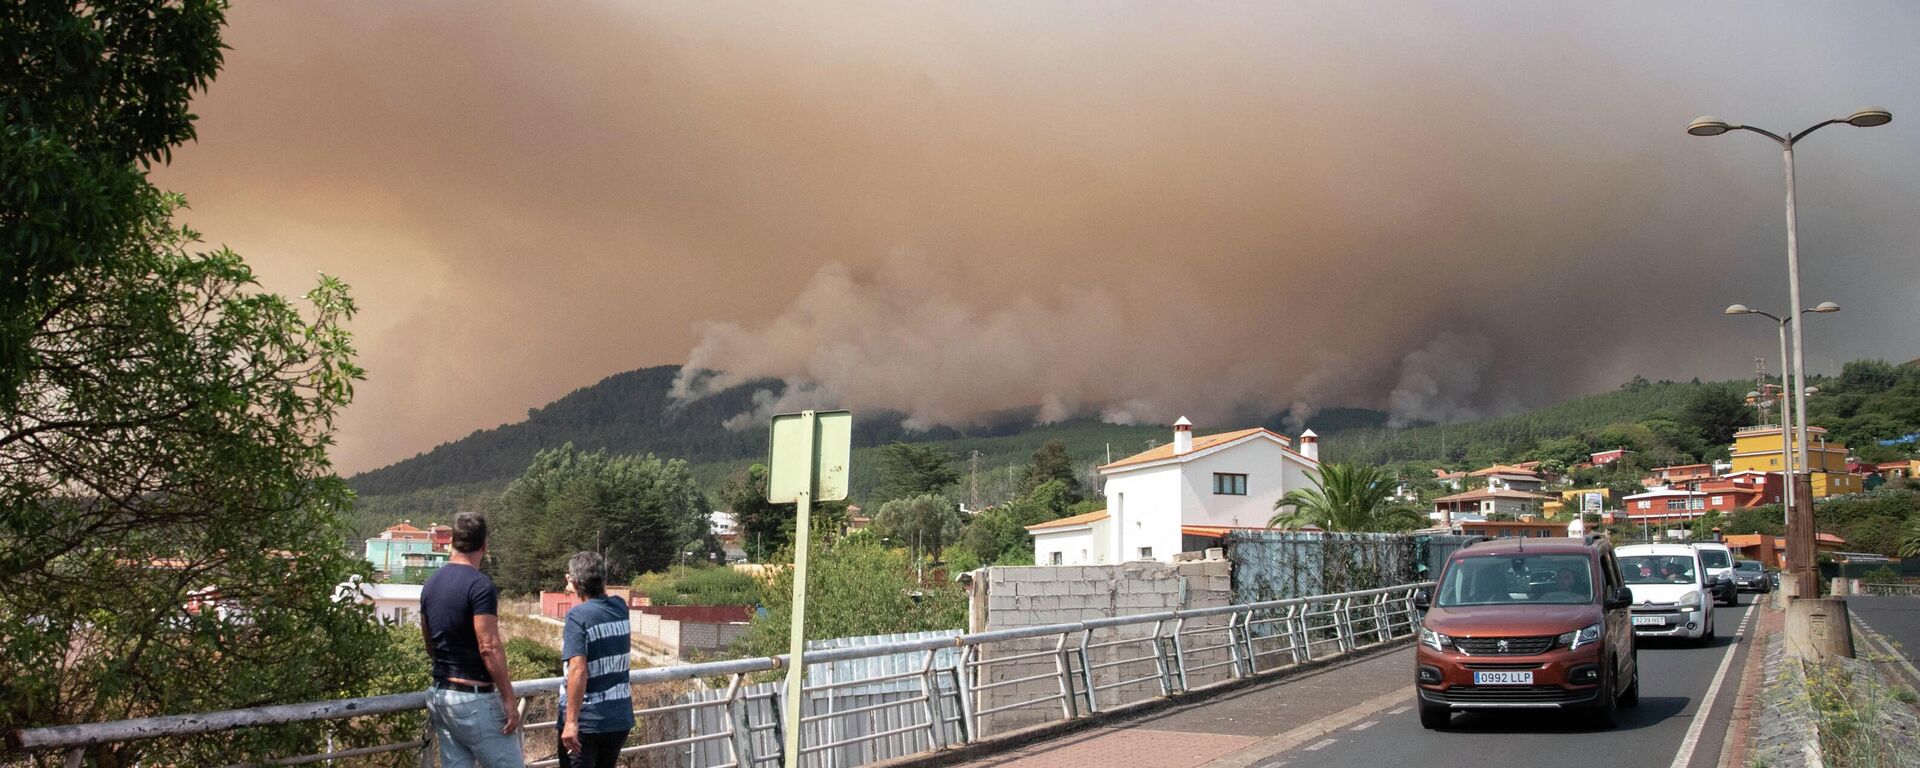 Dos personas en Nuestra Señora del Rosario, el 17 de agosto de 2023, observan enormes nubes de humo procedentes de un incendio forestal en Tenerife  - Sputnik Mundo, 1920, 18.08.2023